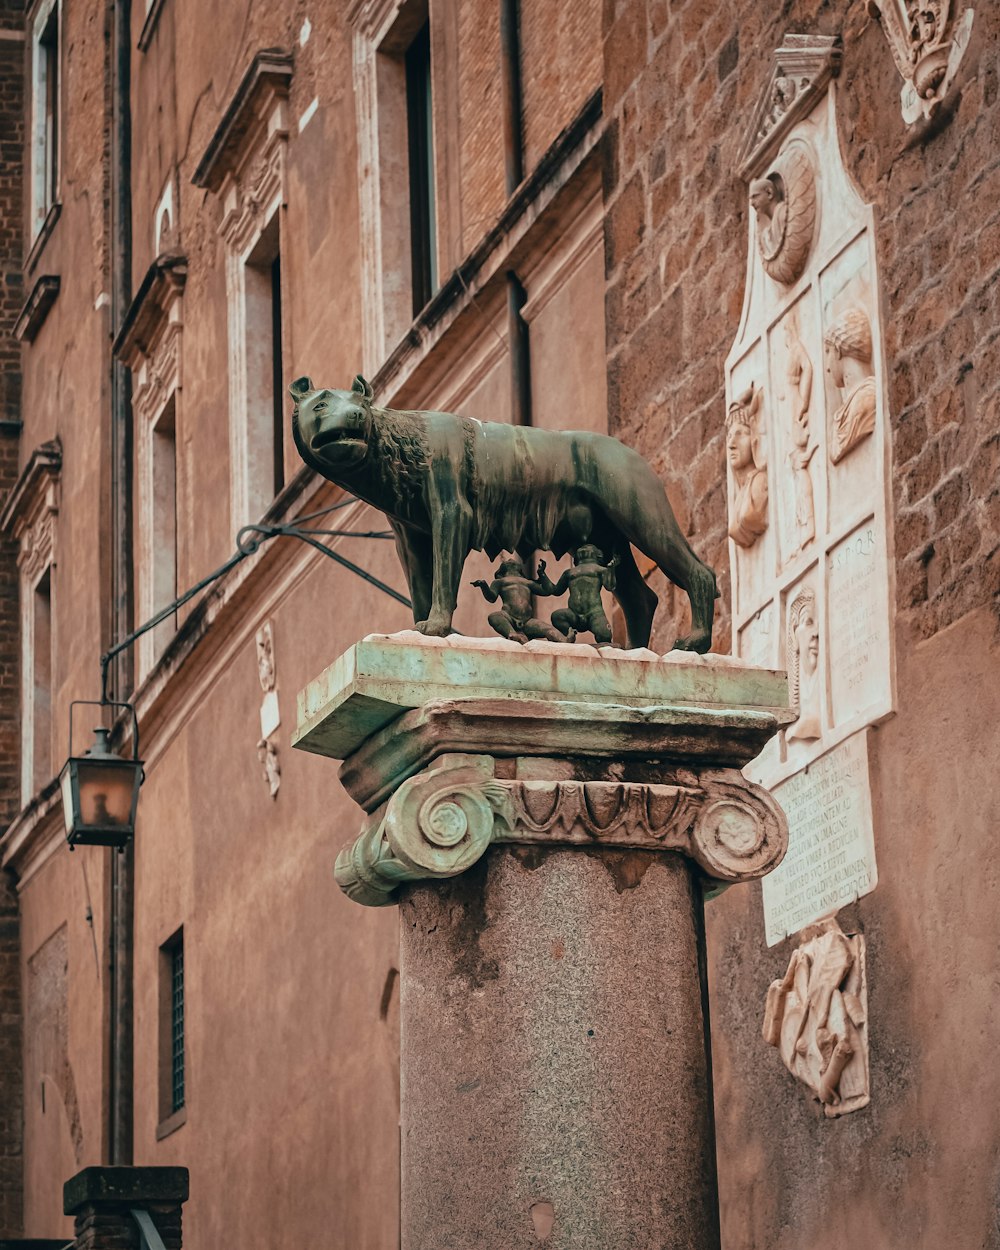 a statue of a bear on a pillar